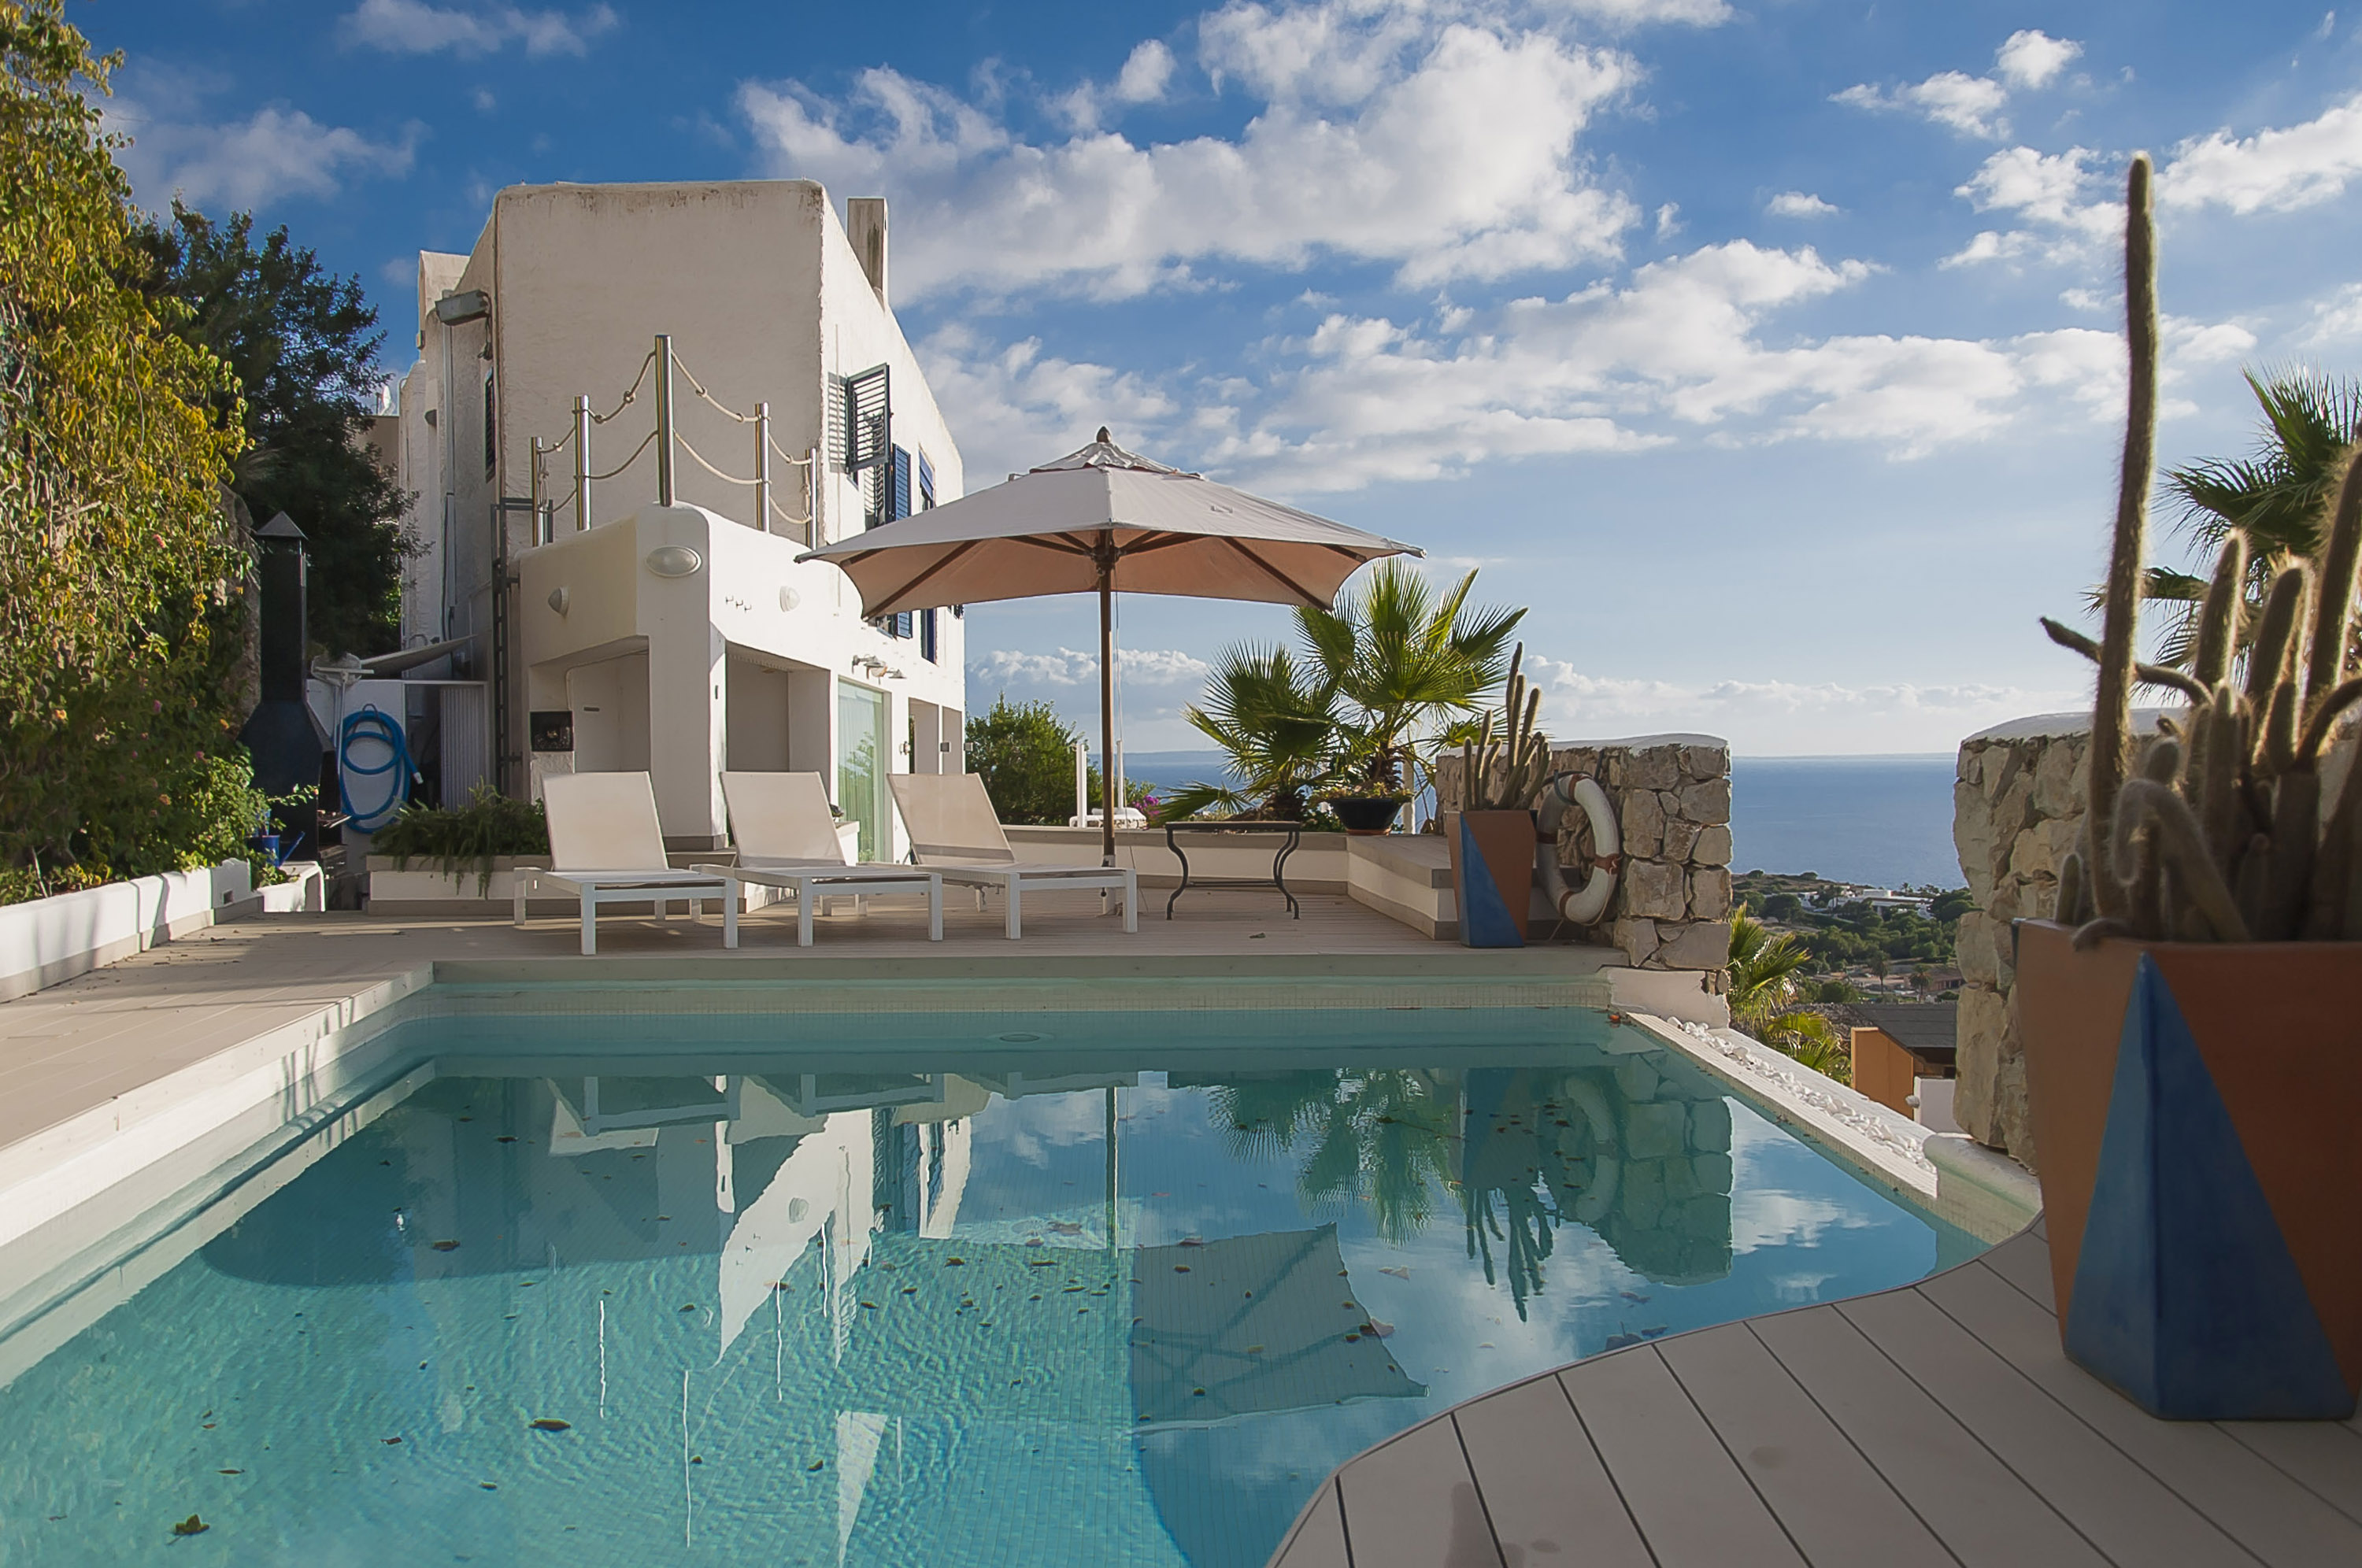 Mediterrane villa op de beste locatie van Ibiza met de beste uitzichten